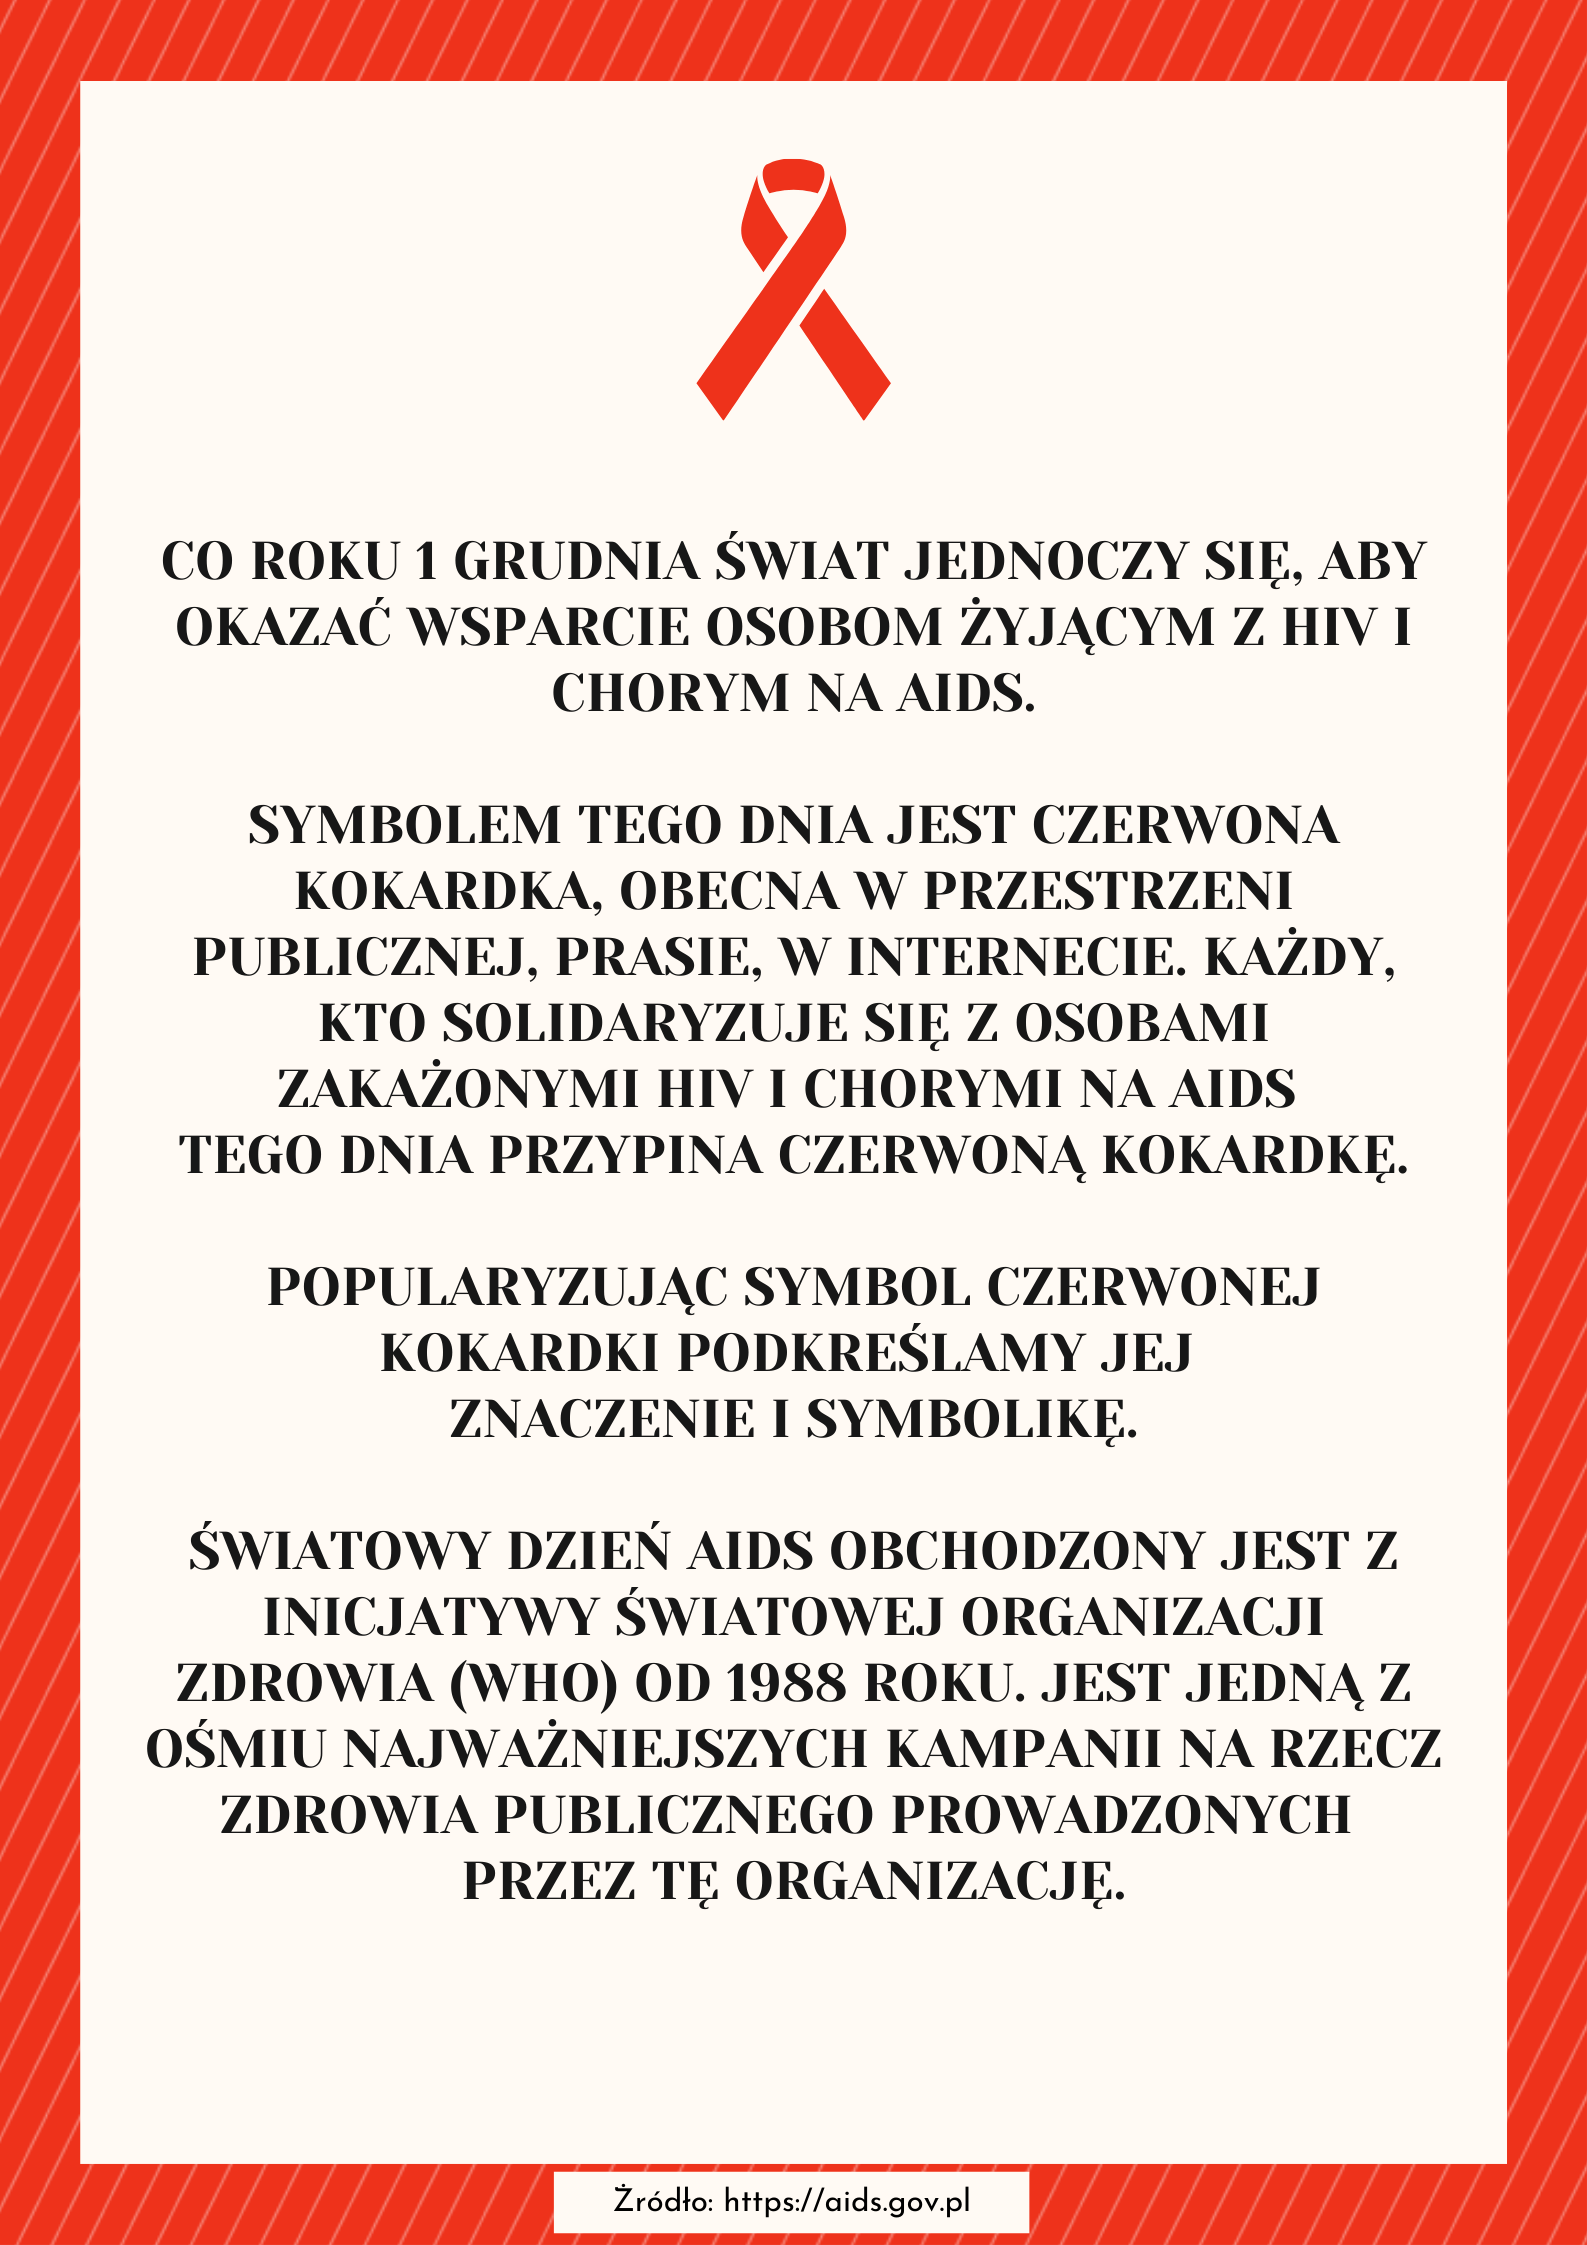 HIV/AIDS awareness - 2